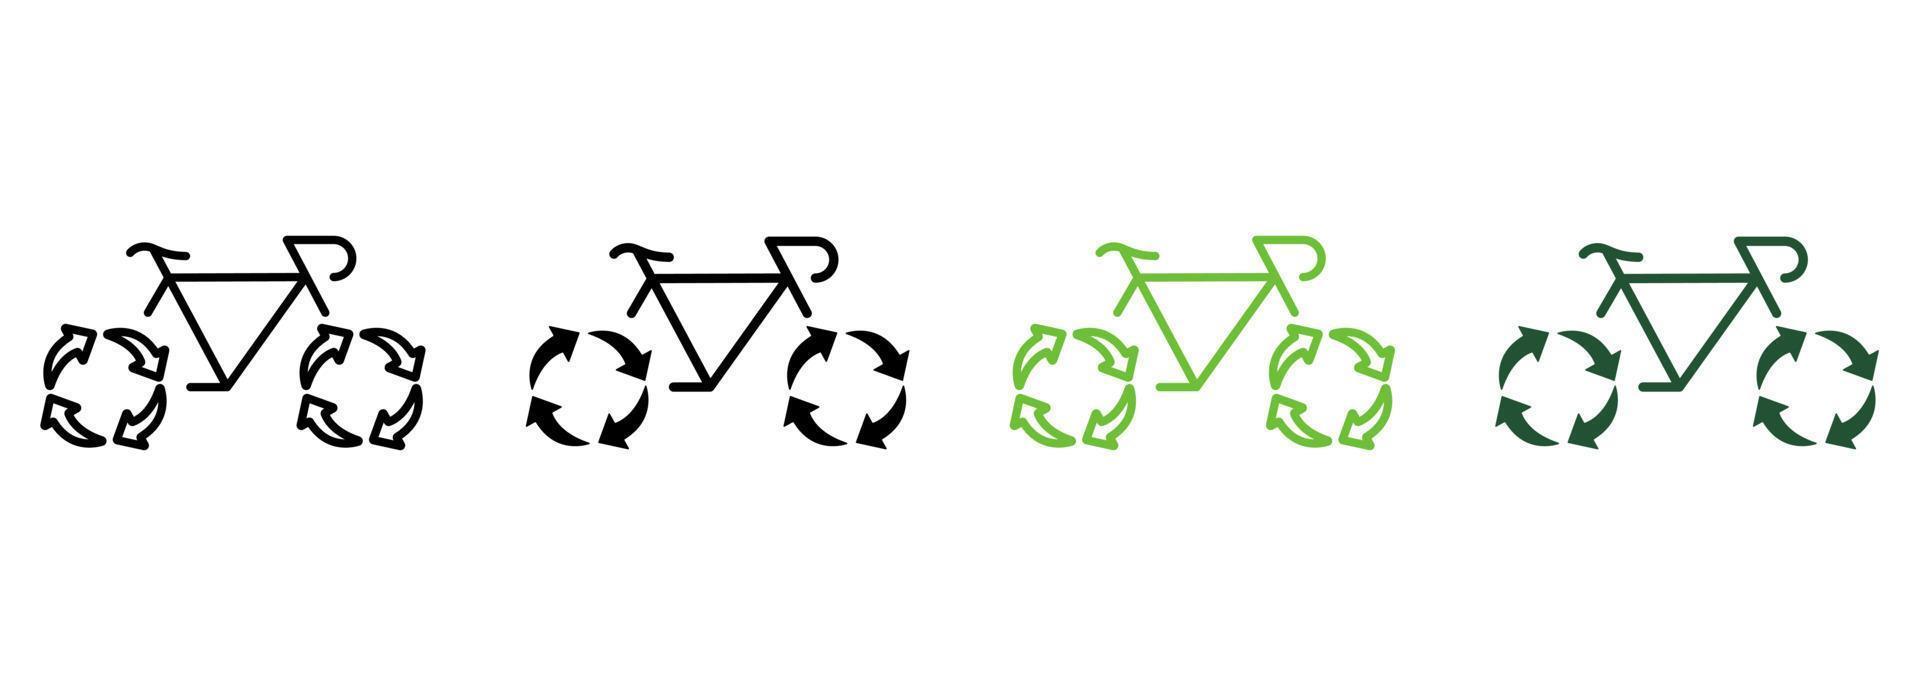 umweltfreundliche transportlinie und silhouette symbol farbsatz. Fahrrad mit Schild für Recyclingräder. Fahrradsymbolsammlung für grüne Energie wiederverwenden. Ökologie Transport. isolierte Vektorillustration. vektor